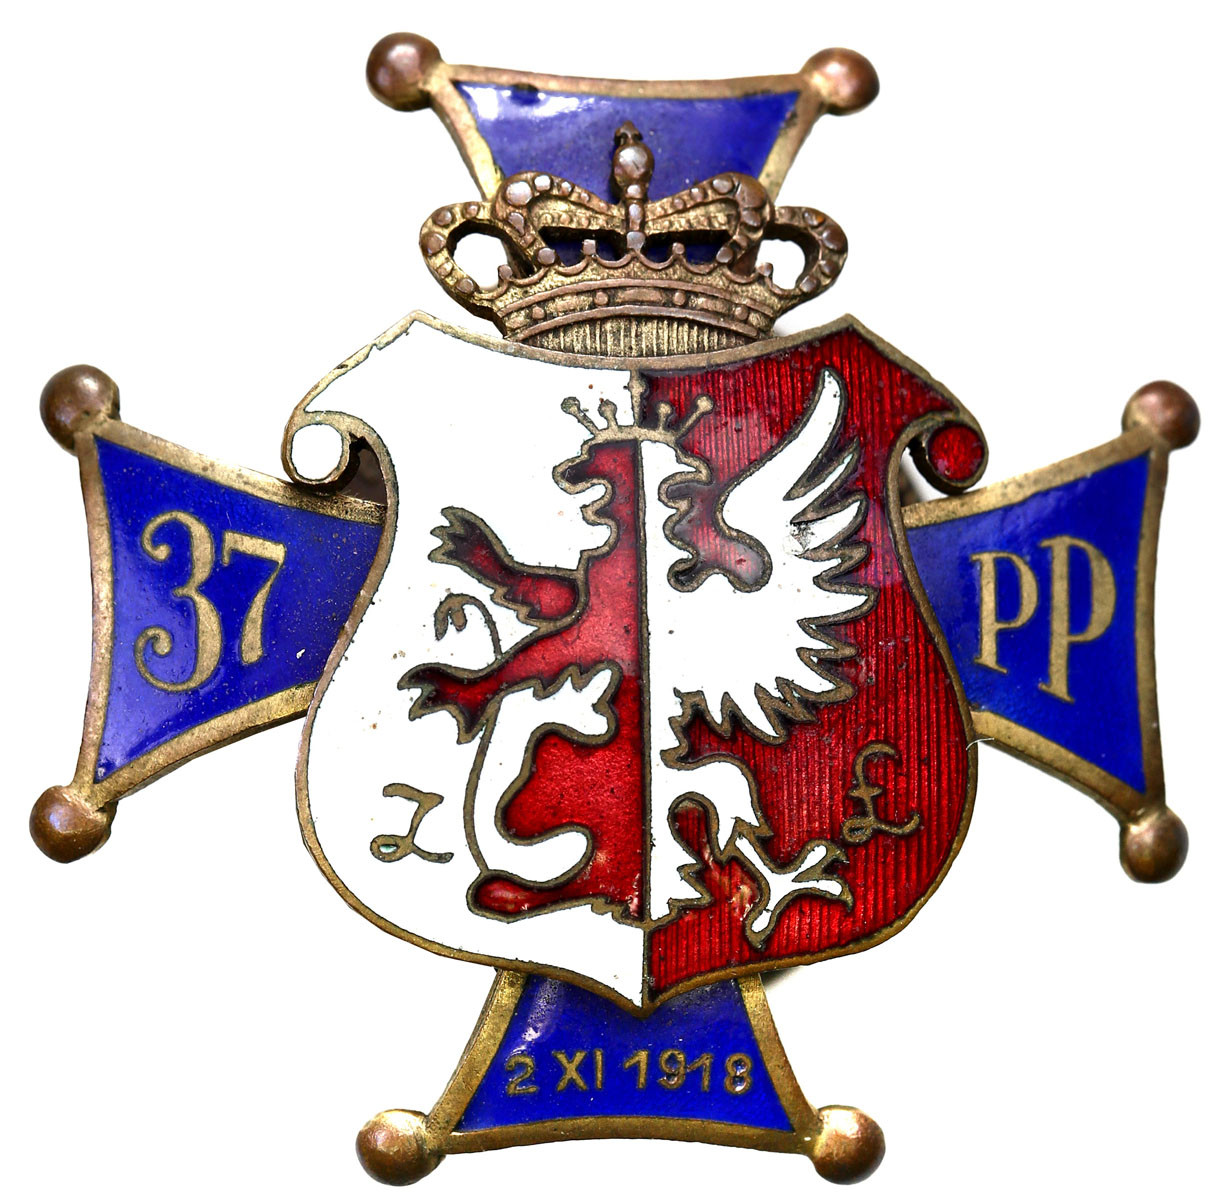 II RP. Odznaka oficerska 37 Łęczyckiego Pułku Piechoty imienia ks. Józefa Poniatowskiego - Kutno